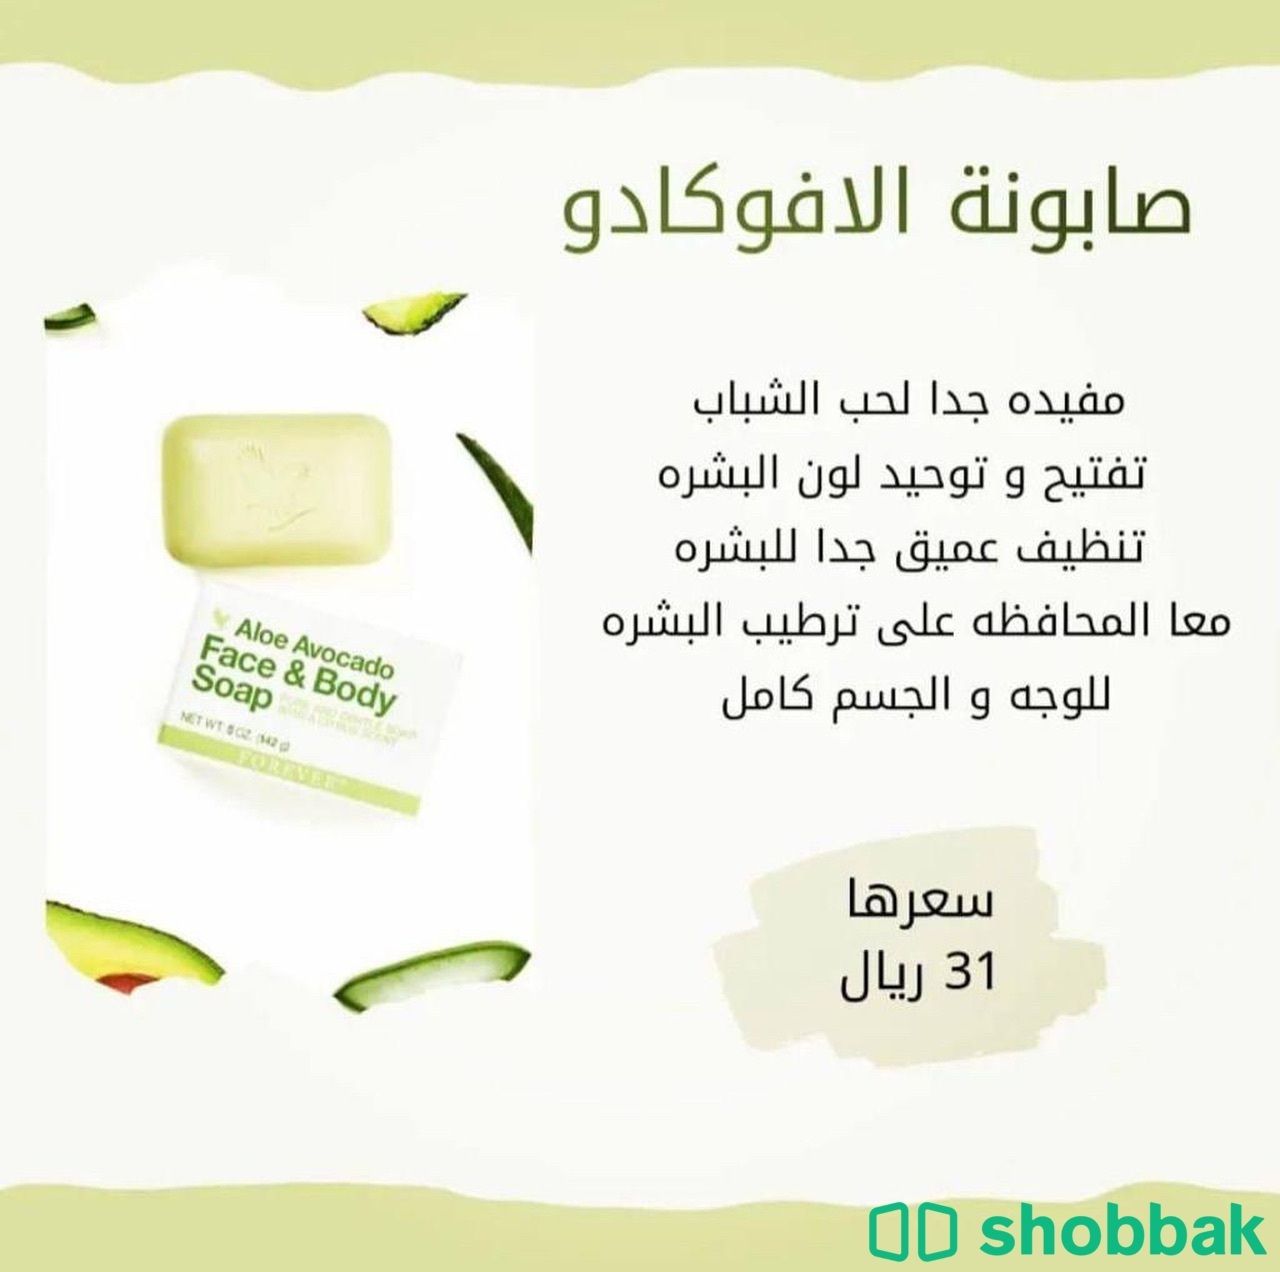 منتجات شركة فورايفر الامريكية Shobbak Saudi Arabia